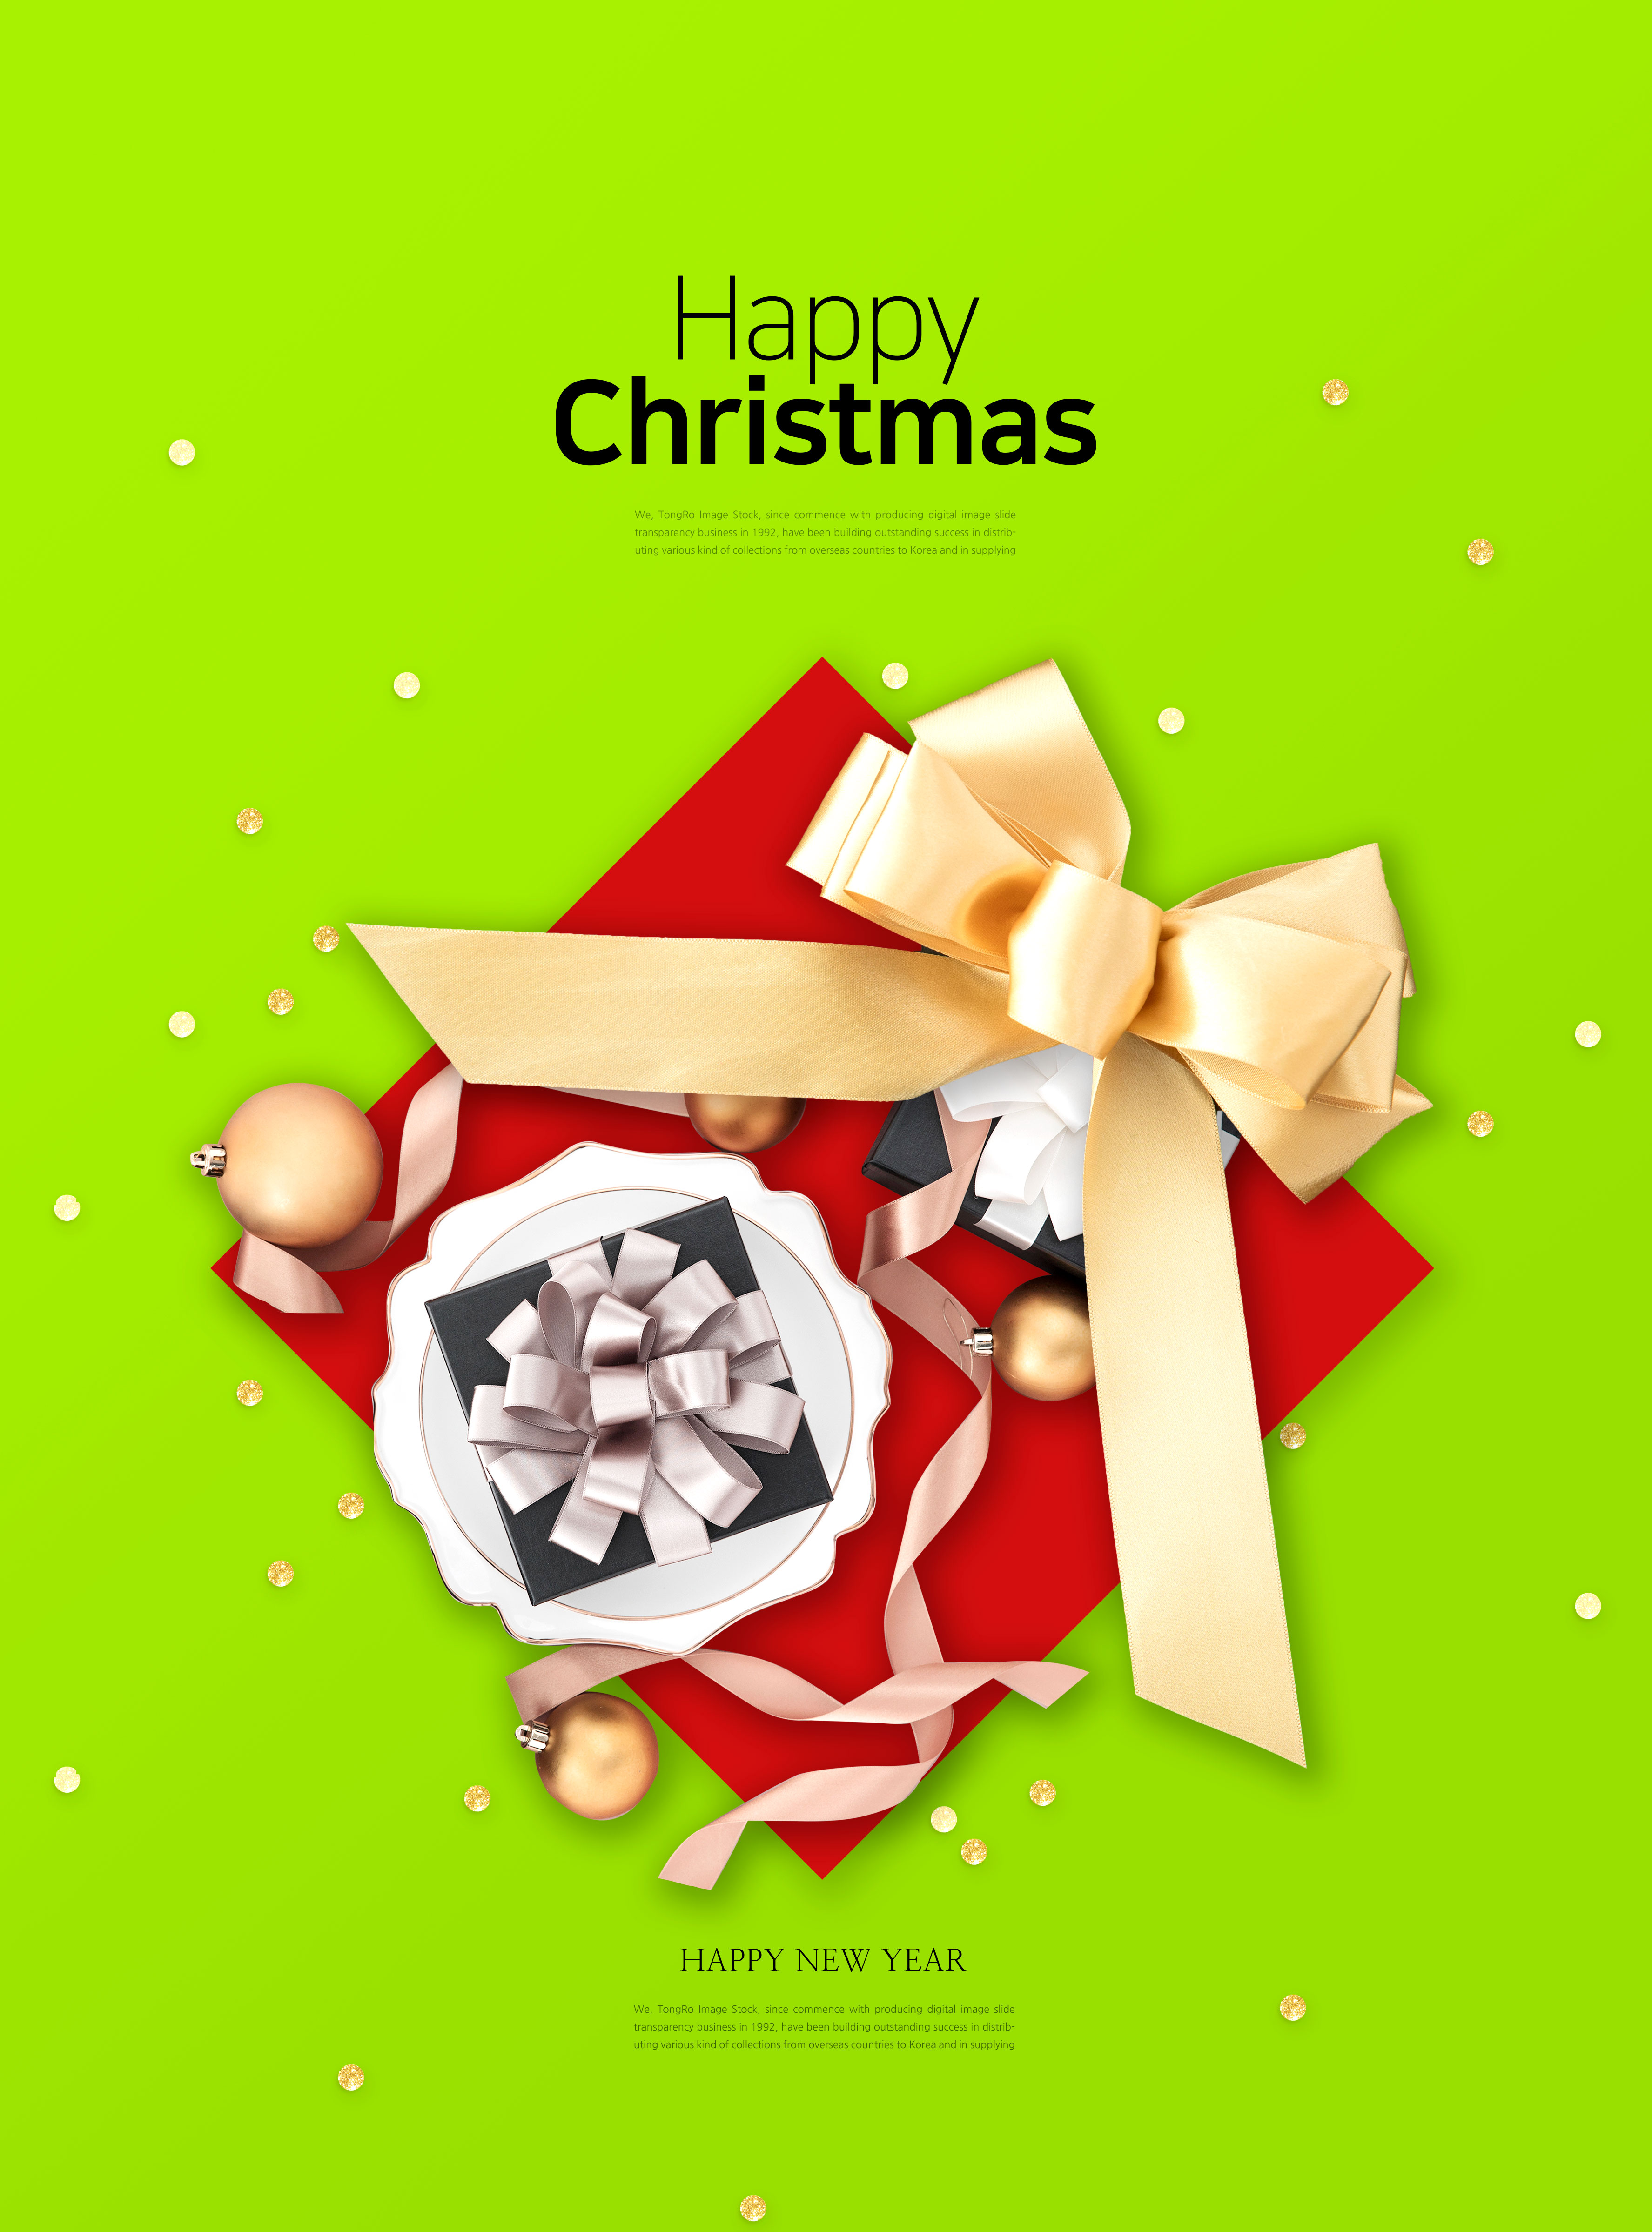 圣诞年终特惠礼品促销活动海报模板psd素材插图